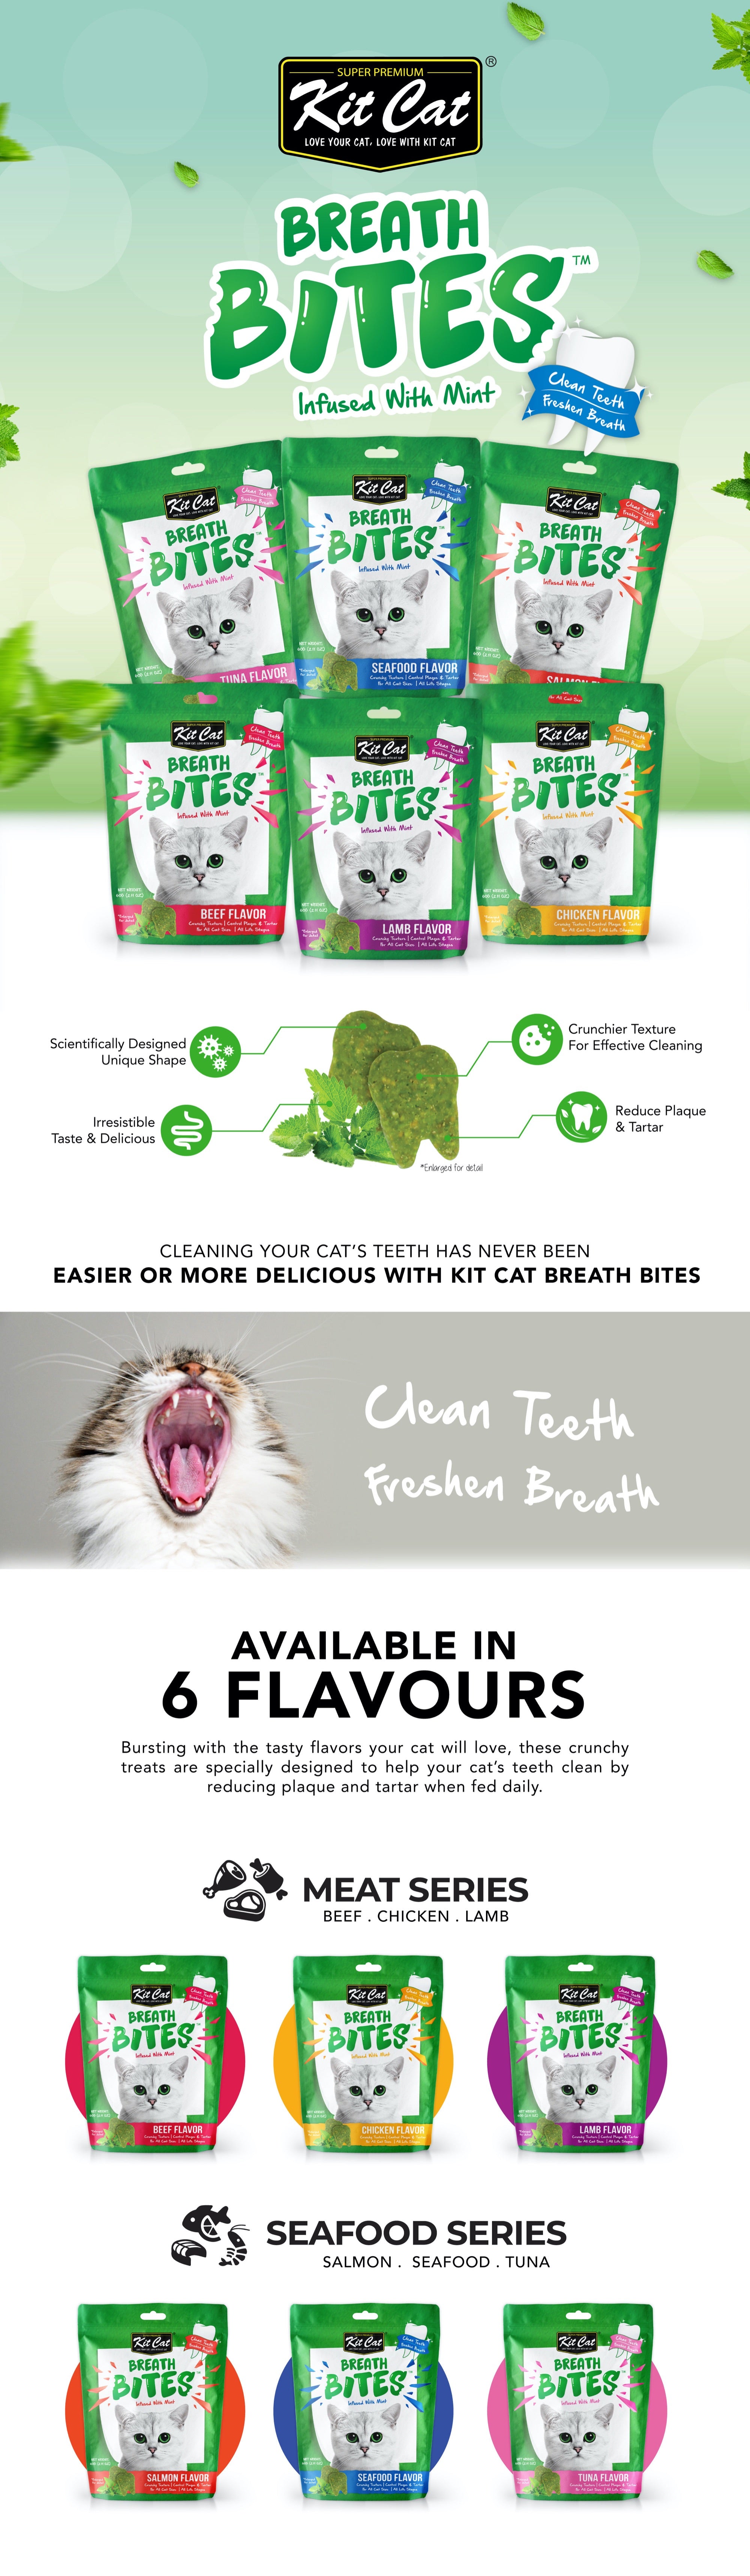 Kit Cat Breath Bites Dental Cat Treats - Tuna (60g)